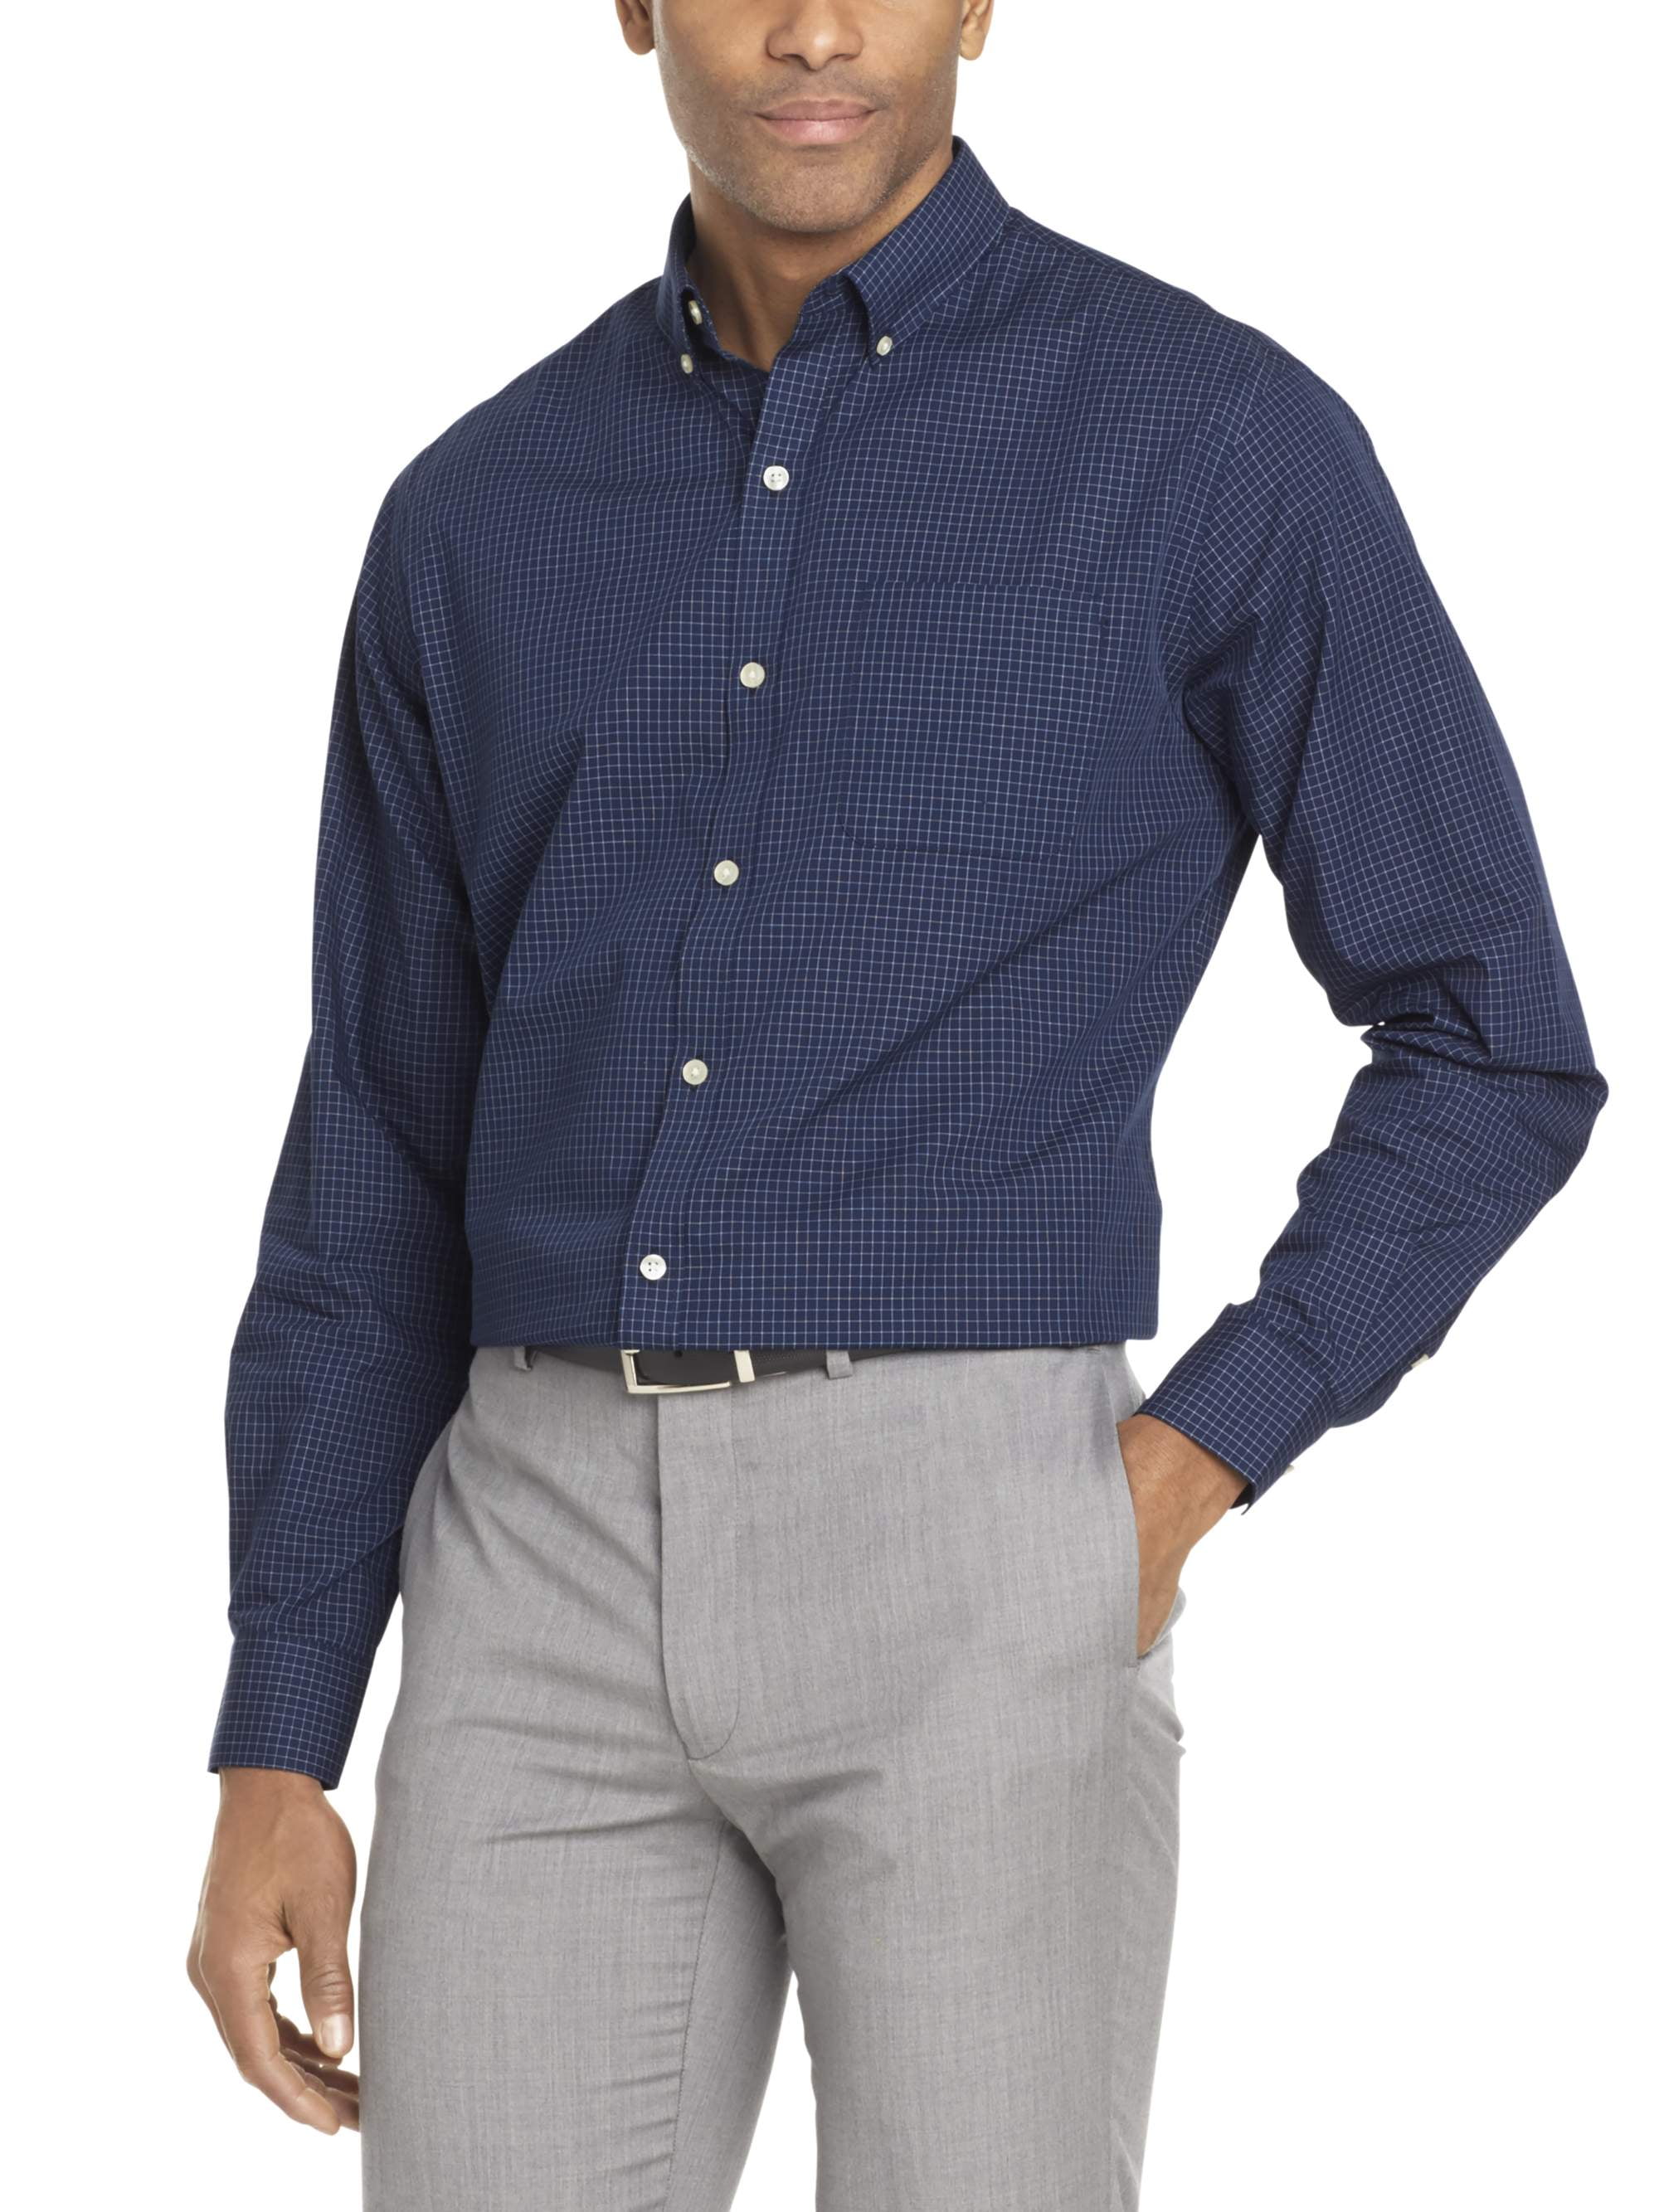 Van Heusen Men's Oxford Long Sleeve Button Down Shirt